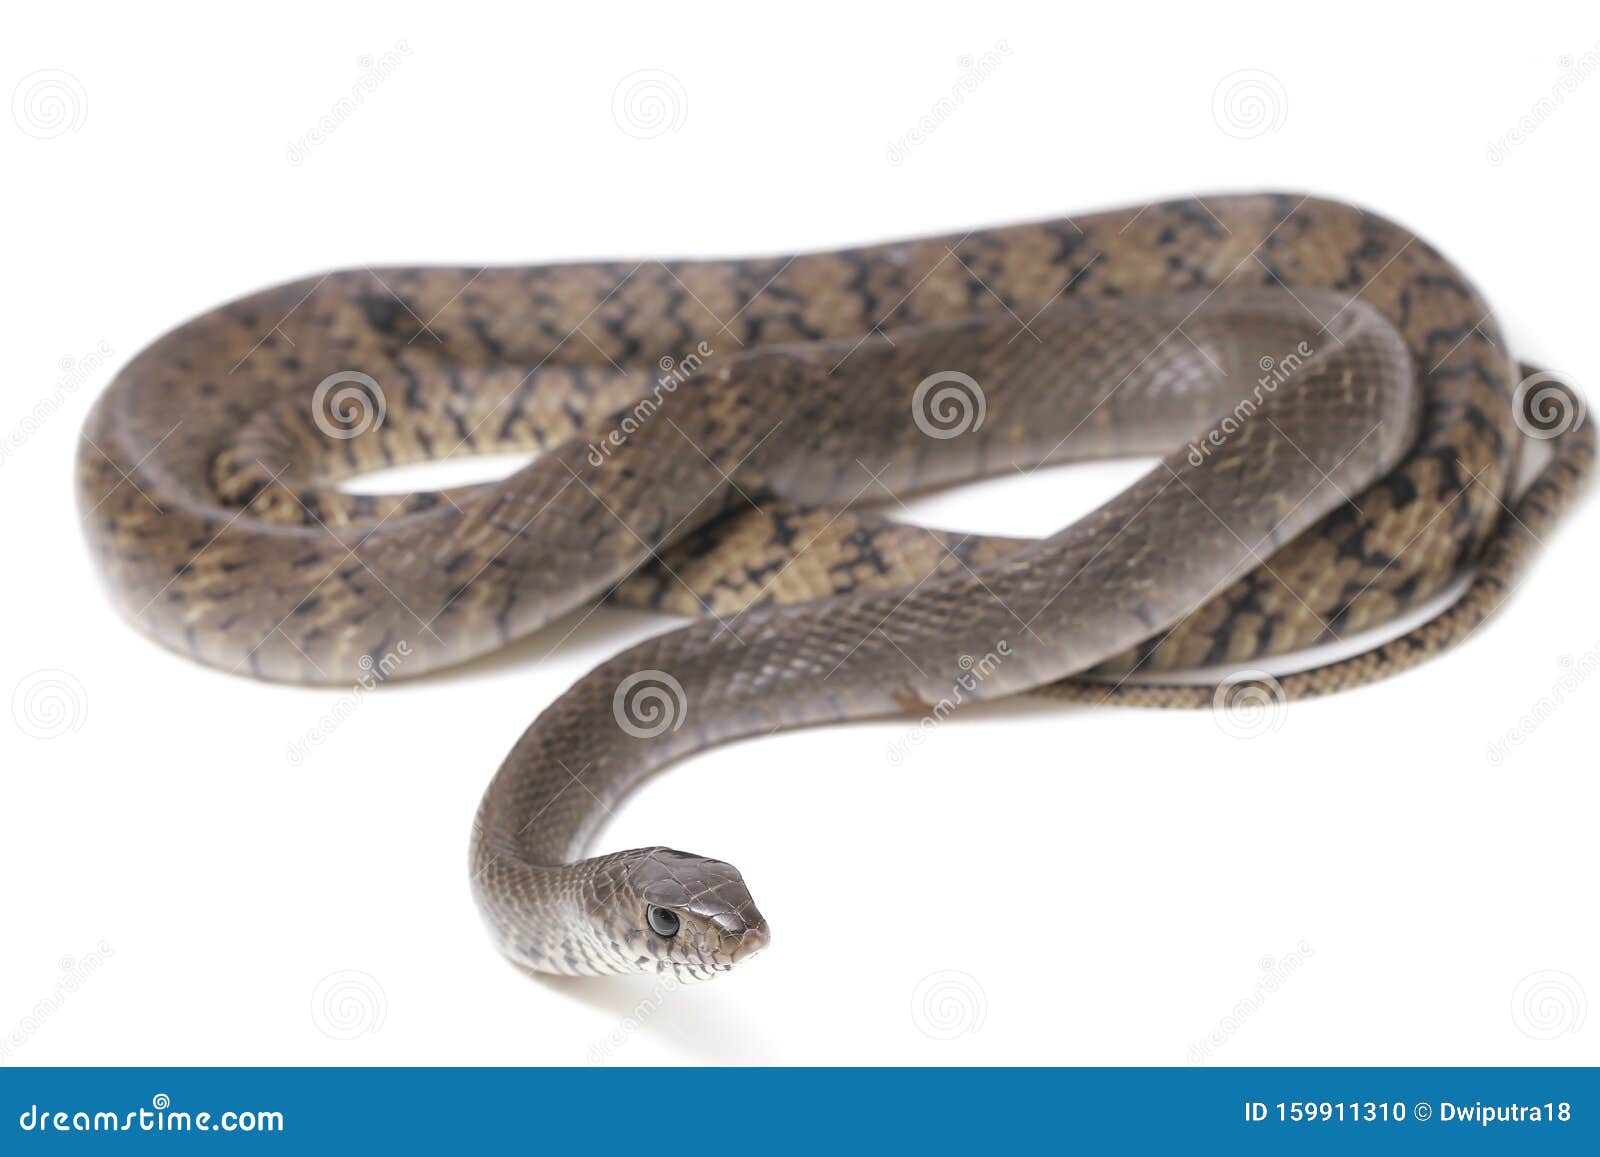 印度白鼠蛇 一种常见于苏特地区的皱纹蛇库存照片 图片包括有印度白鼠蛇 一种常见于苏特地区的皱纹蛇